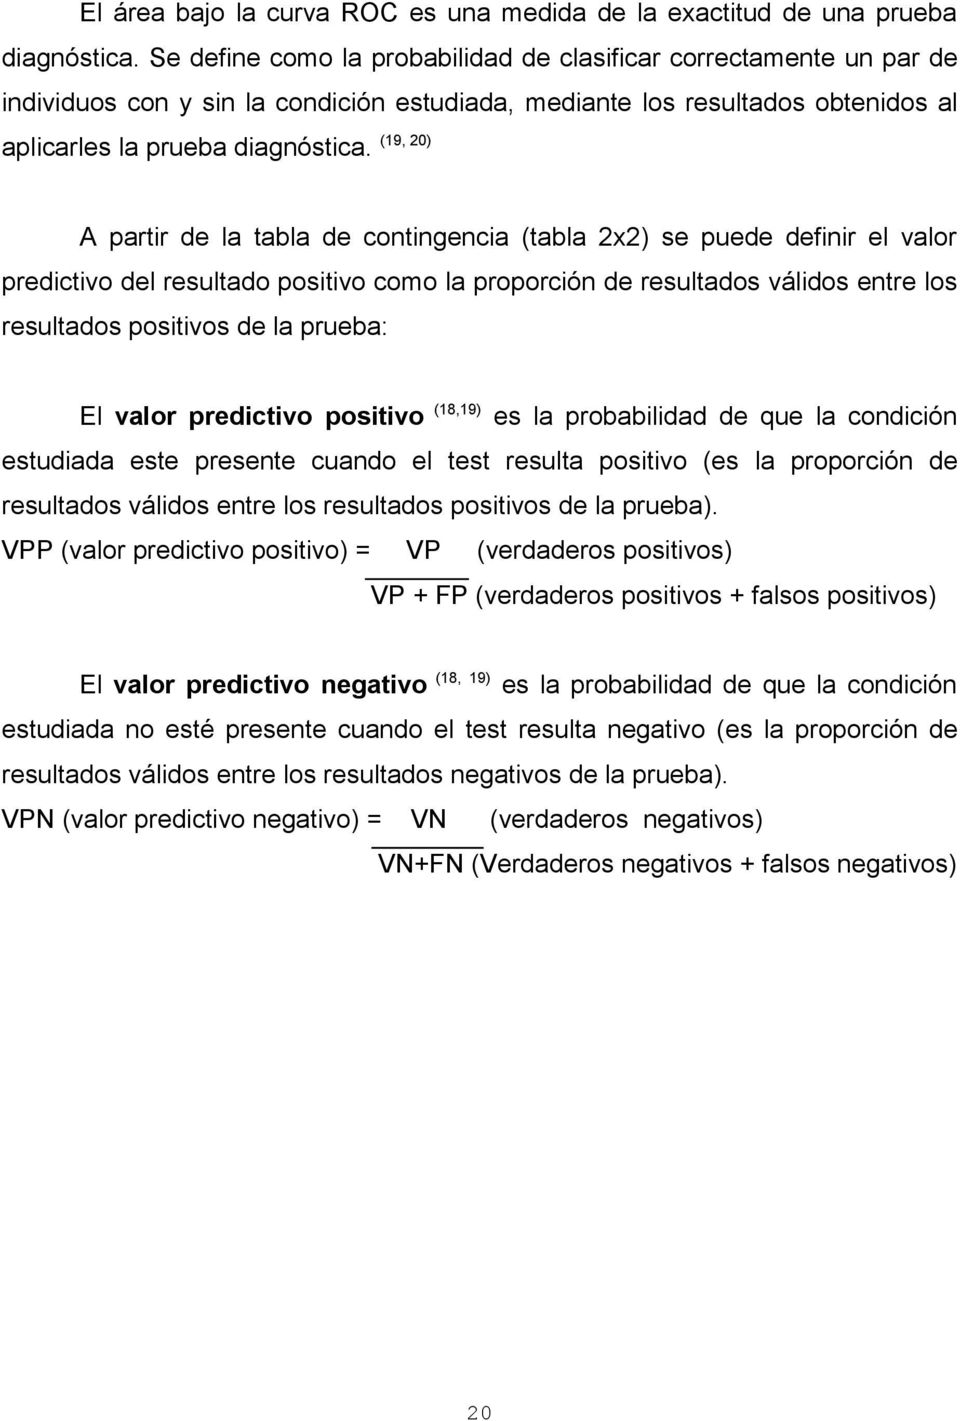 (19, 20) A partir de la tabla de contingencia (tabla 2x2) se puede definir el valor predictivo del resultado positivo como la proporción de resultados válidos entre los resultados positivos de la